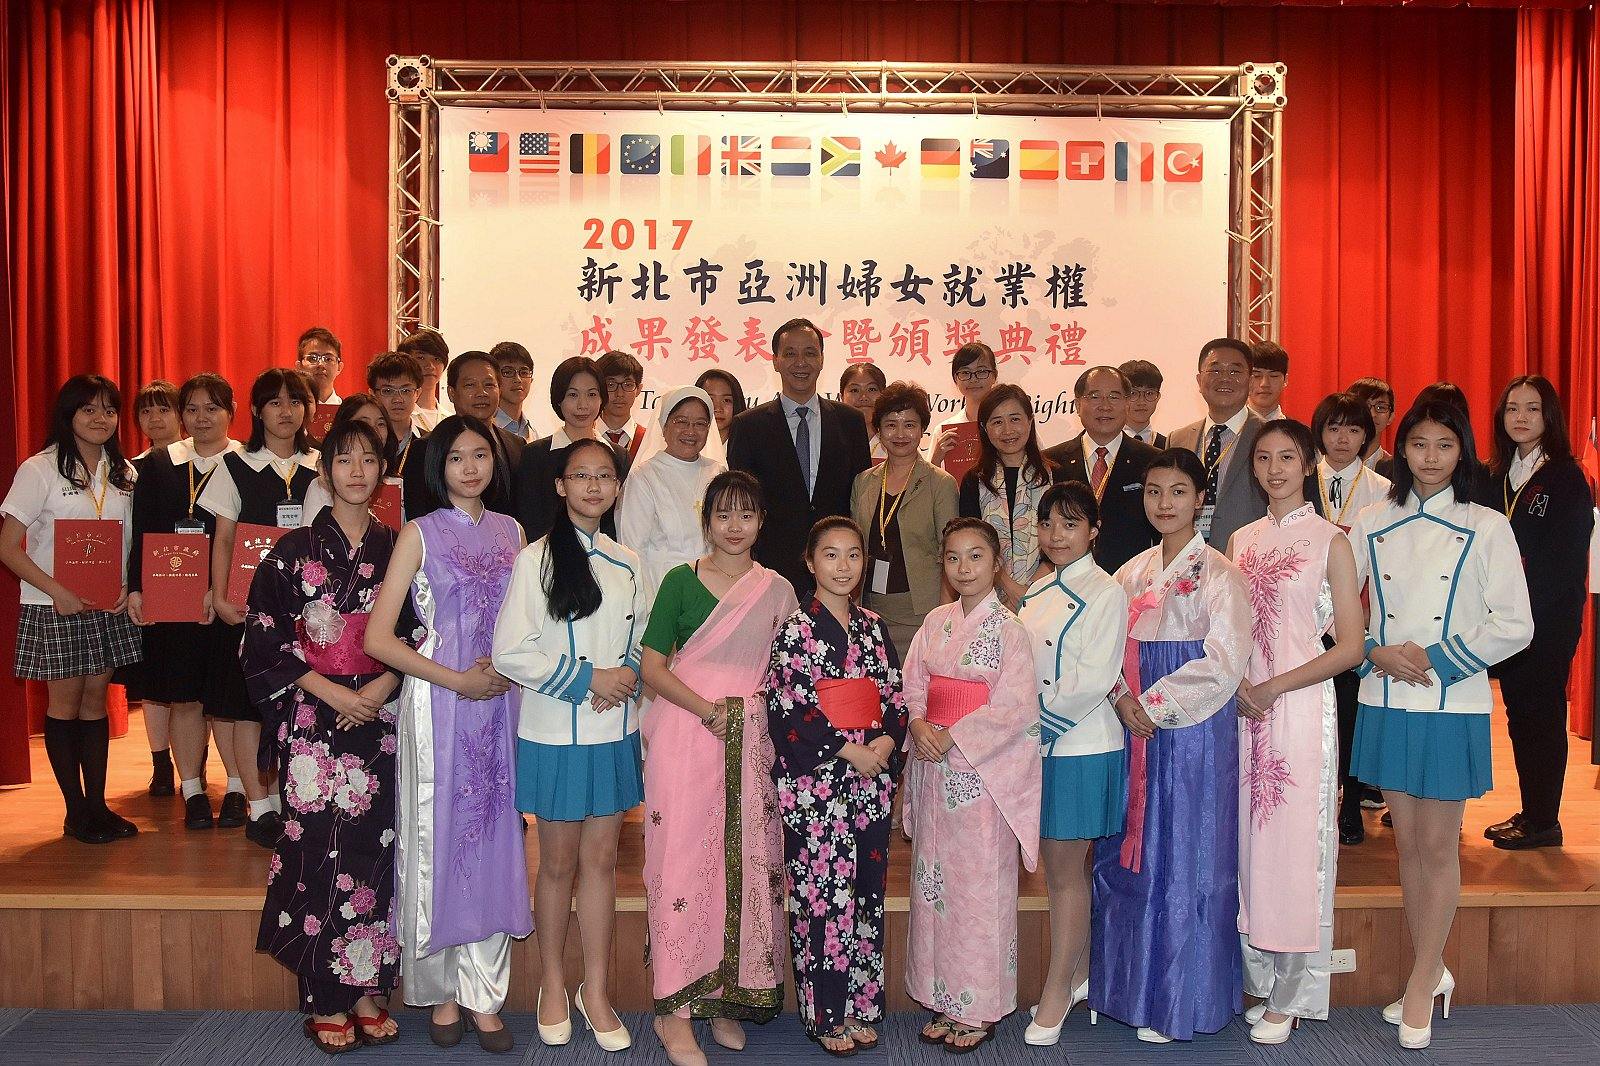 市長出席亞洲婦女就業權發表會暨頒獎典禮，與獲獎學生合影